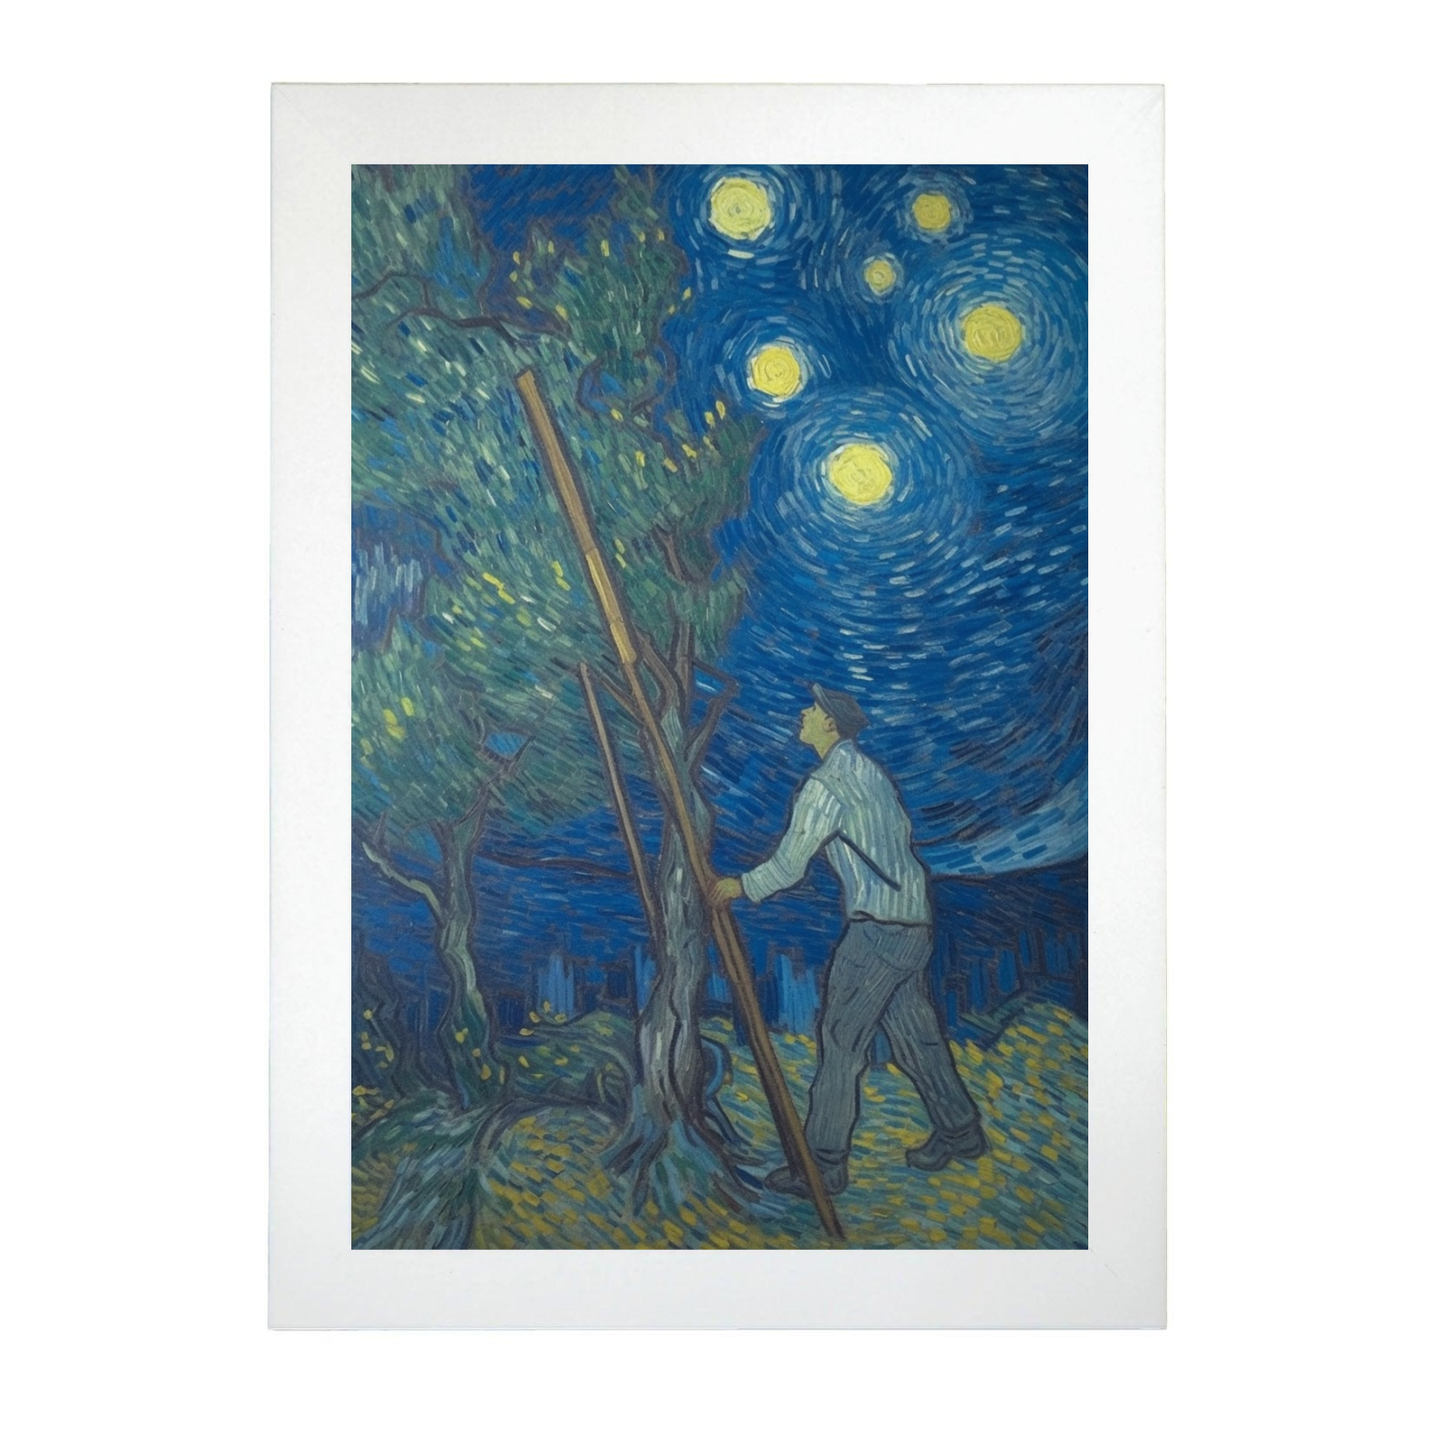 Póster de Vincent van Gogh sin texto